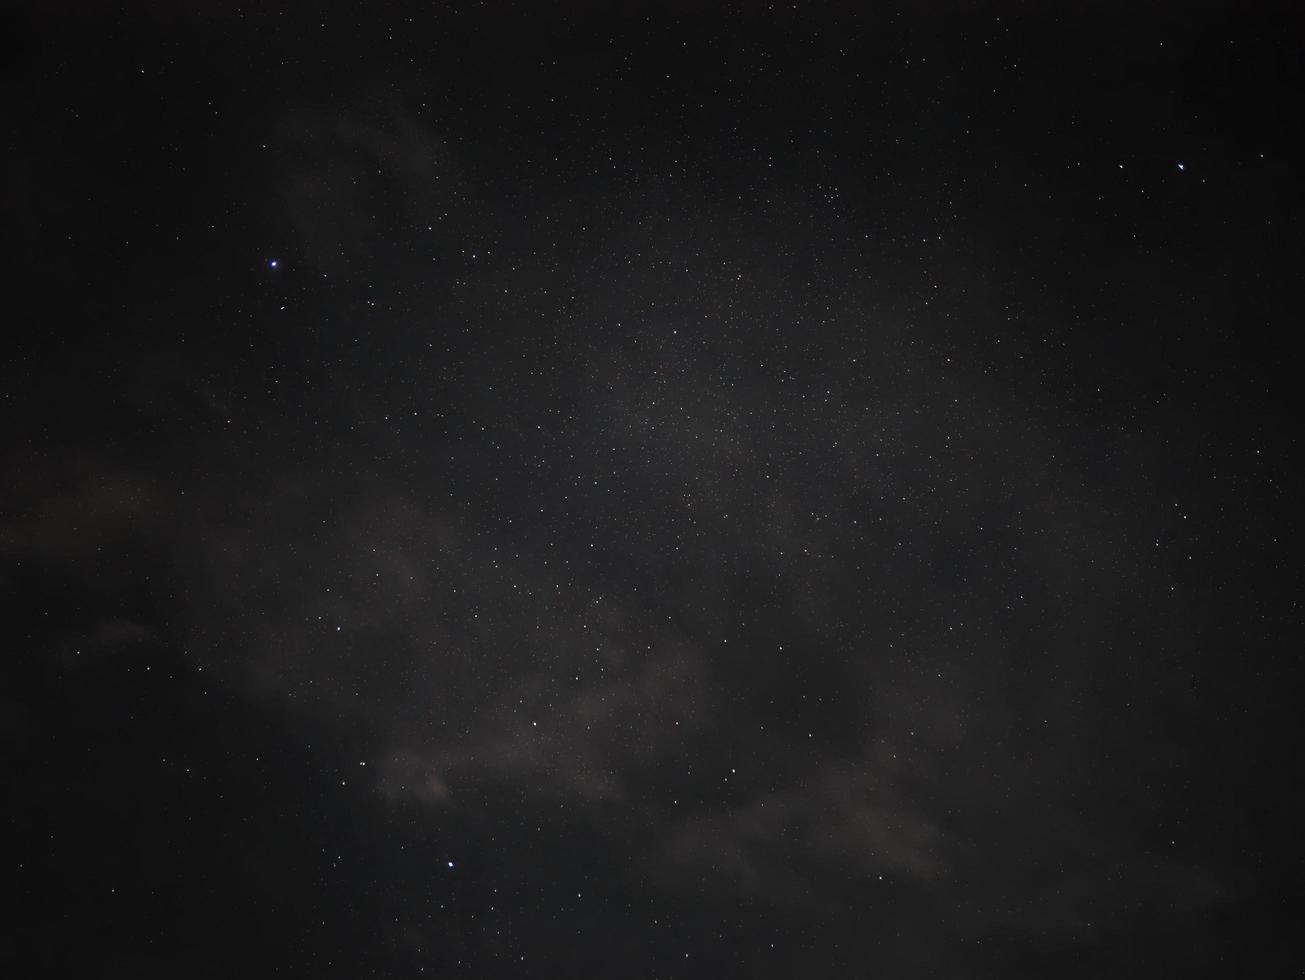 visão de ângulo baixo do céu noturno estrelado e poeira espacial no universo, cosmos, fundo escuro, foto noturna da constelação